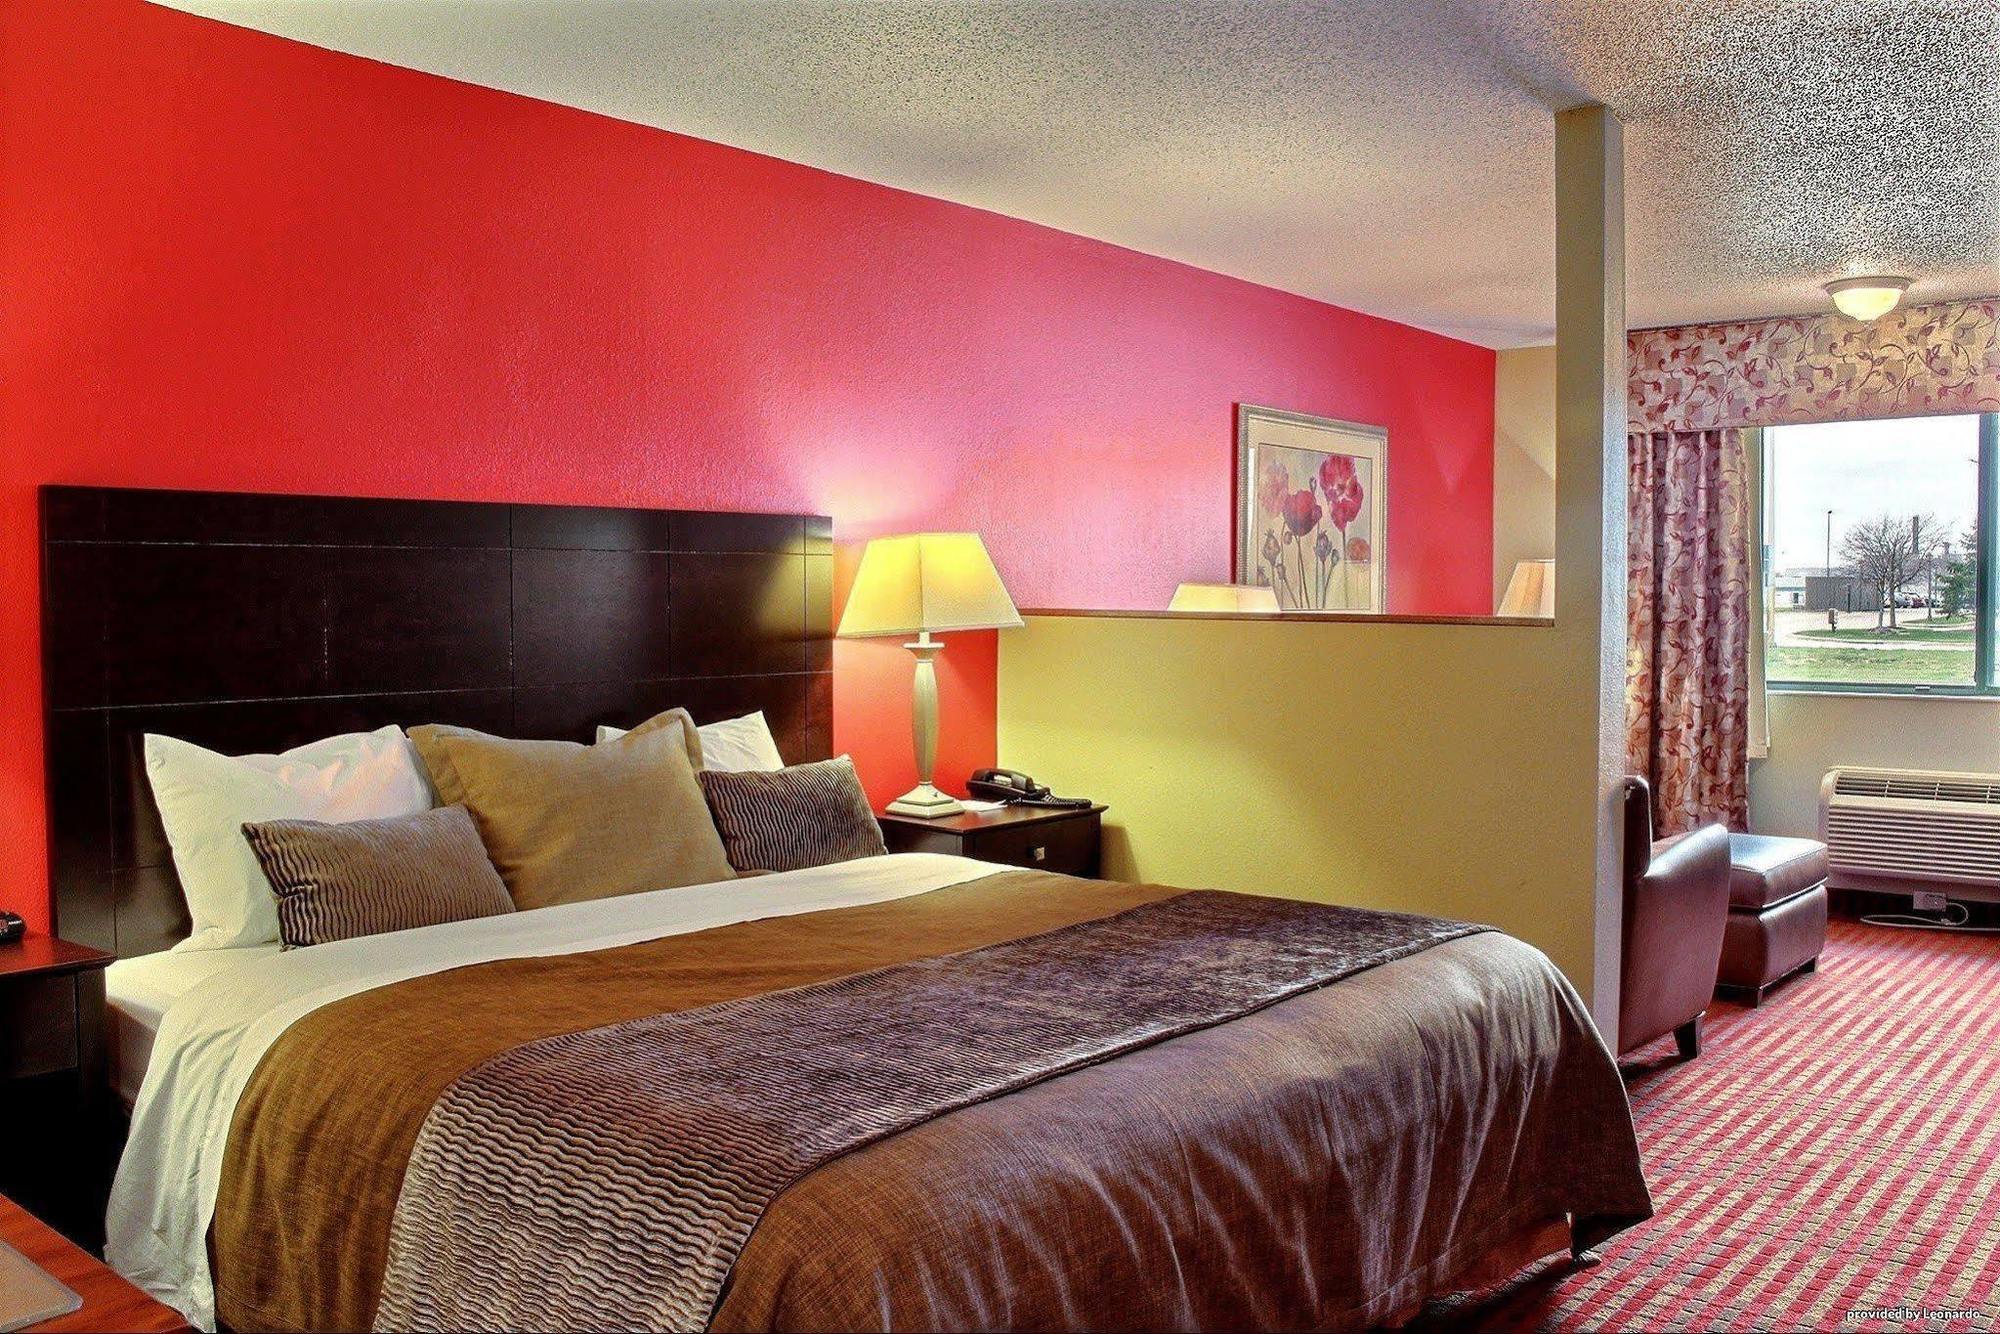 Comfort Inn & Suites At I-74 And 155 Morton Bilik gambar